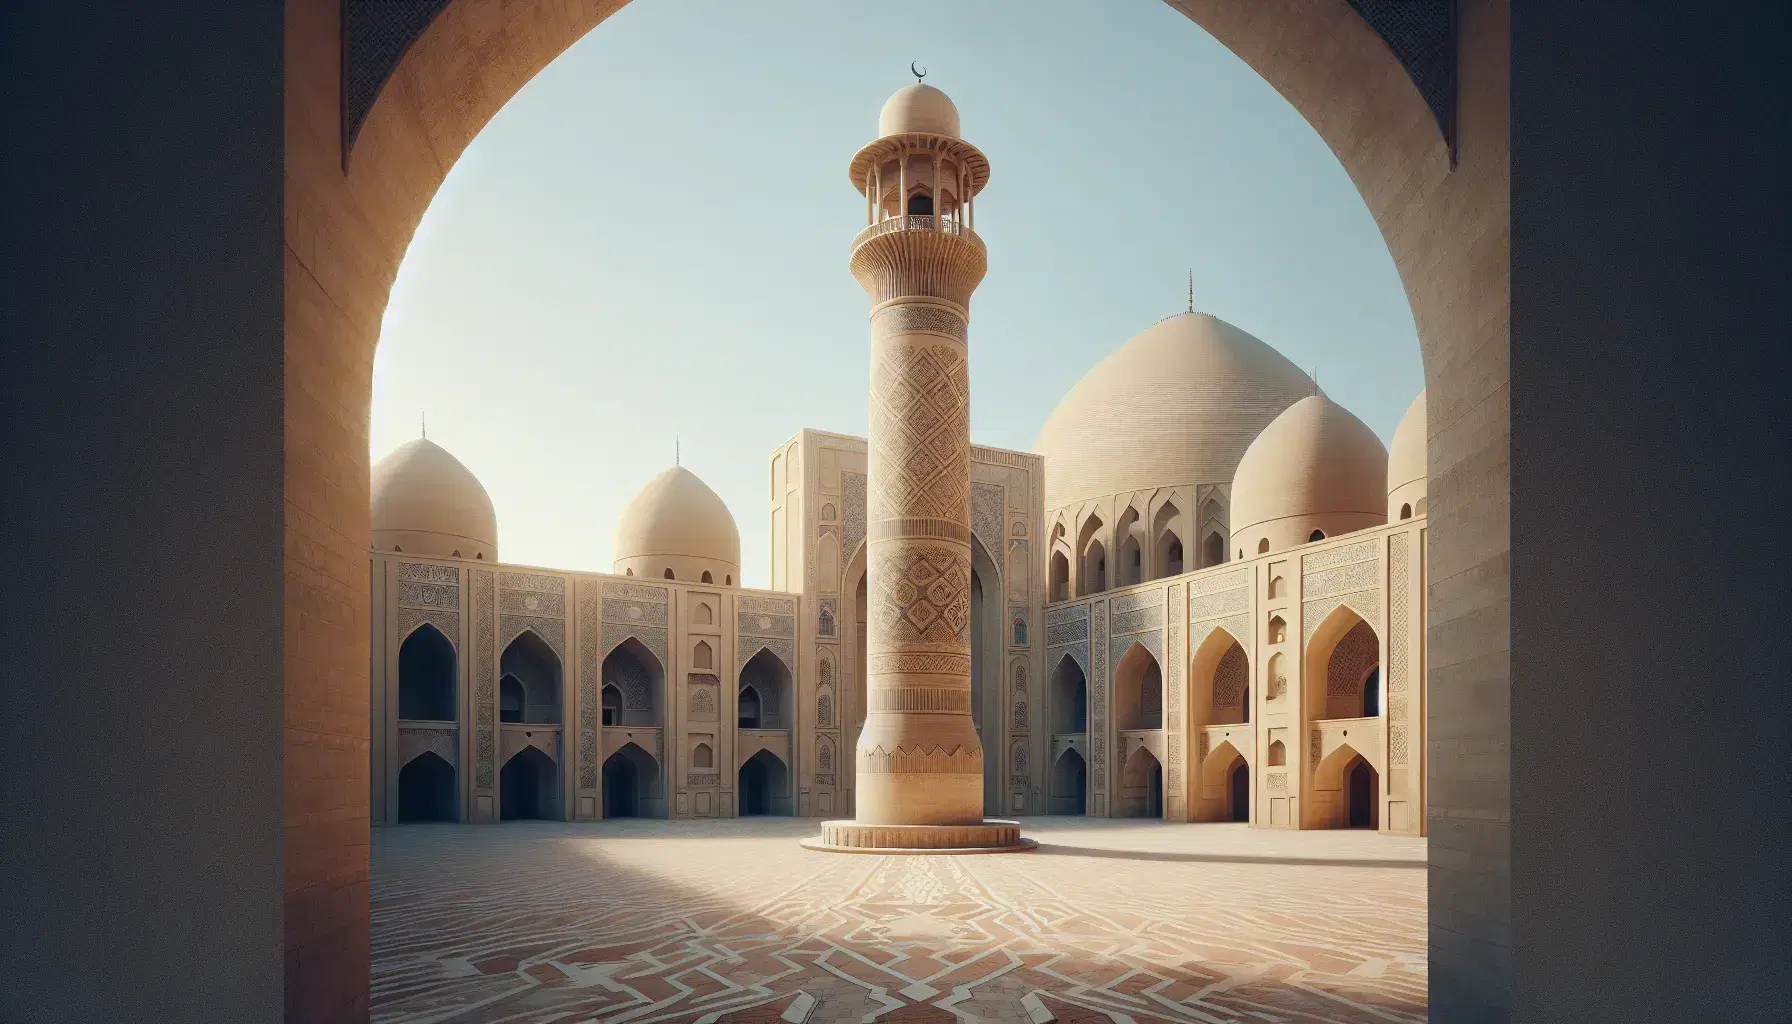 Mezquita antigua con arquitectura islámica, minarete cilíndrico beige con patrones geométricos y cúpula con creciente, rodeada de edificios con cúpulas y arcos de herradura bajo un cielo azul claro.